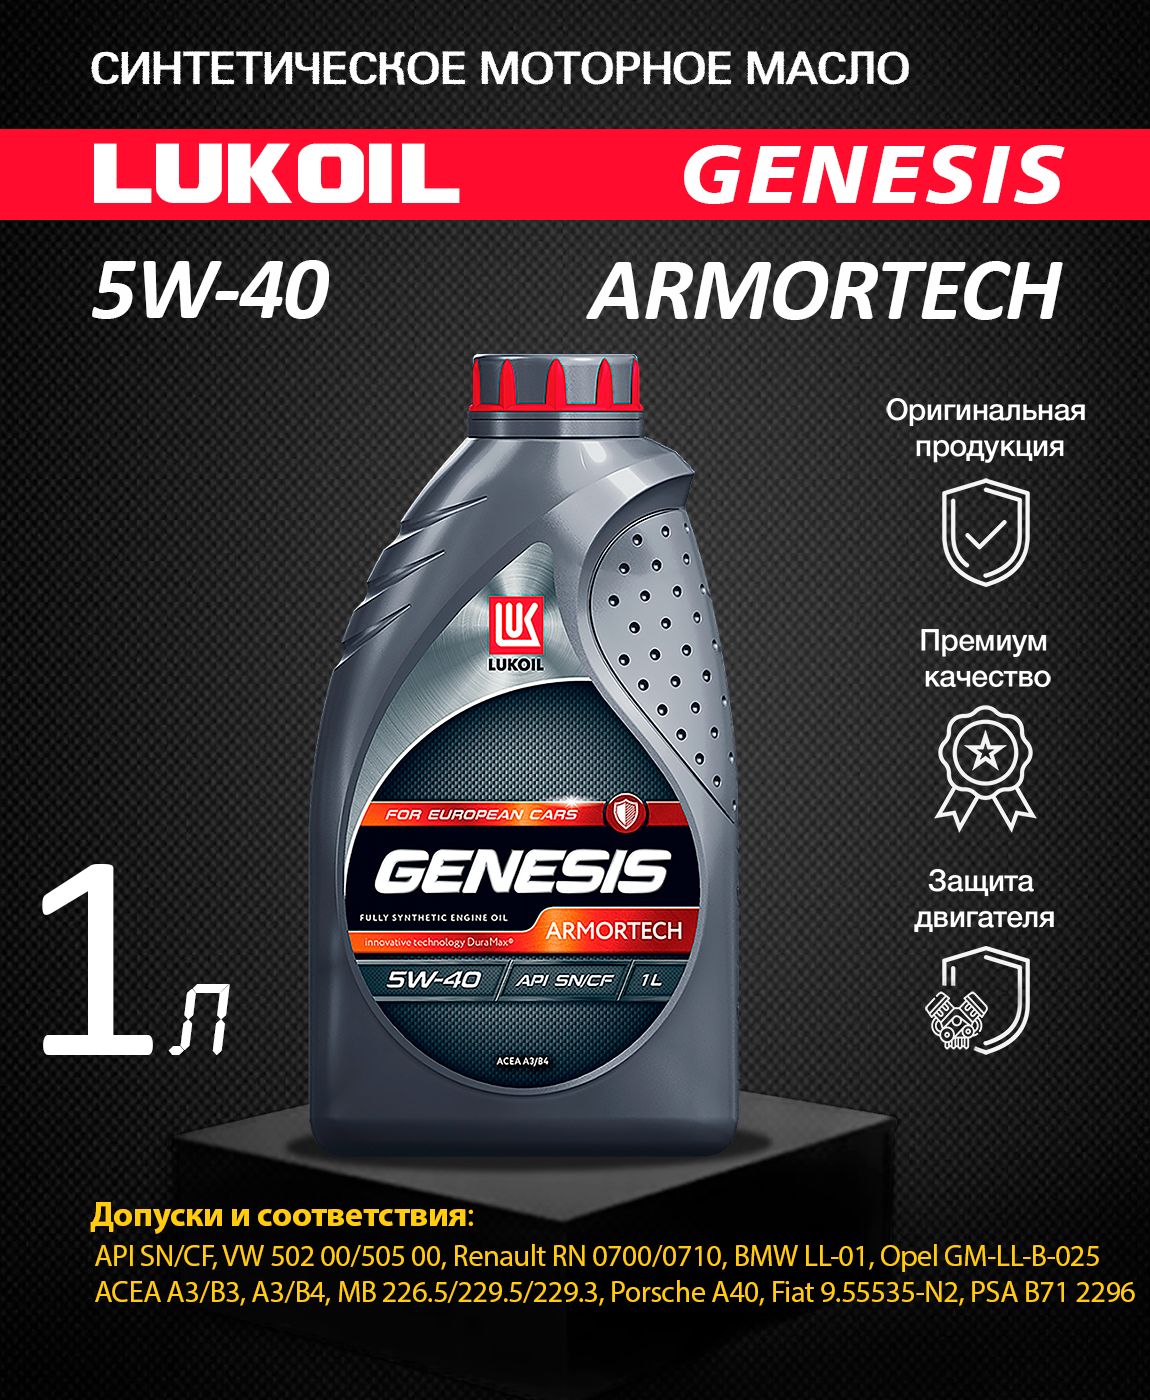 Моторное масло лукойл отзывы владельцев. Лукойл Genesis Armortech 5w-40 1л. Lukoil Genesis Armortech 5w-40 1л. 1607013 Lukoil Genesis Armortech 5w-40 5л. Genesis Armortech for European cars 5w-40.